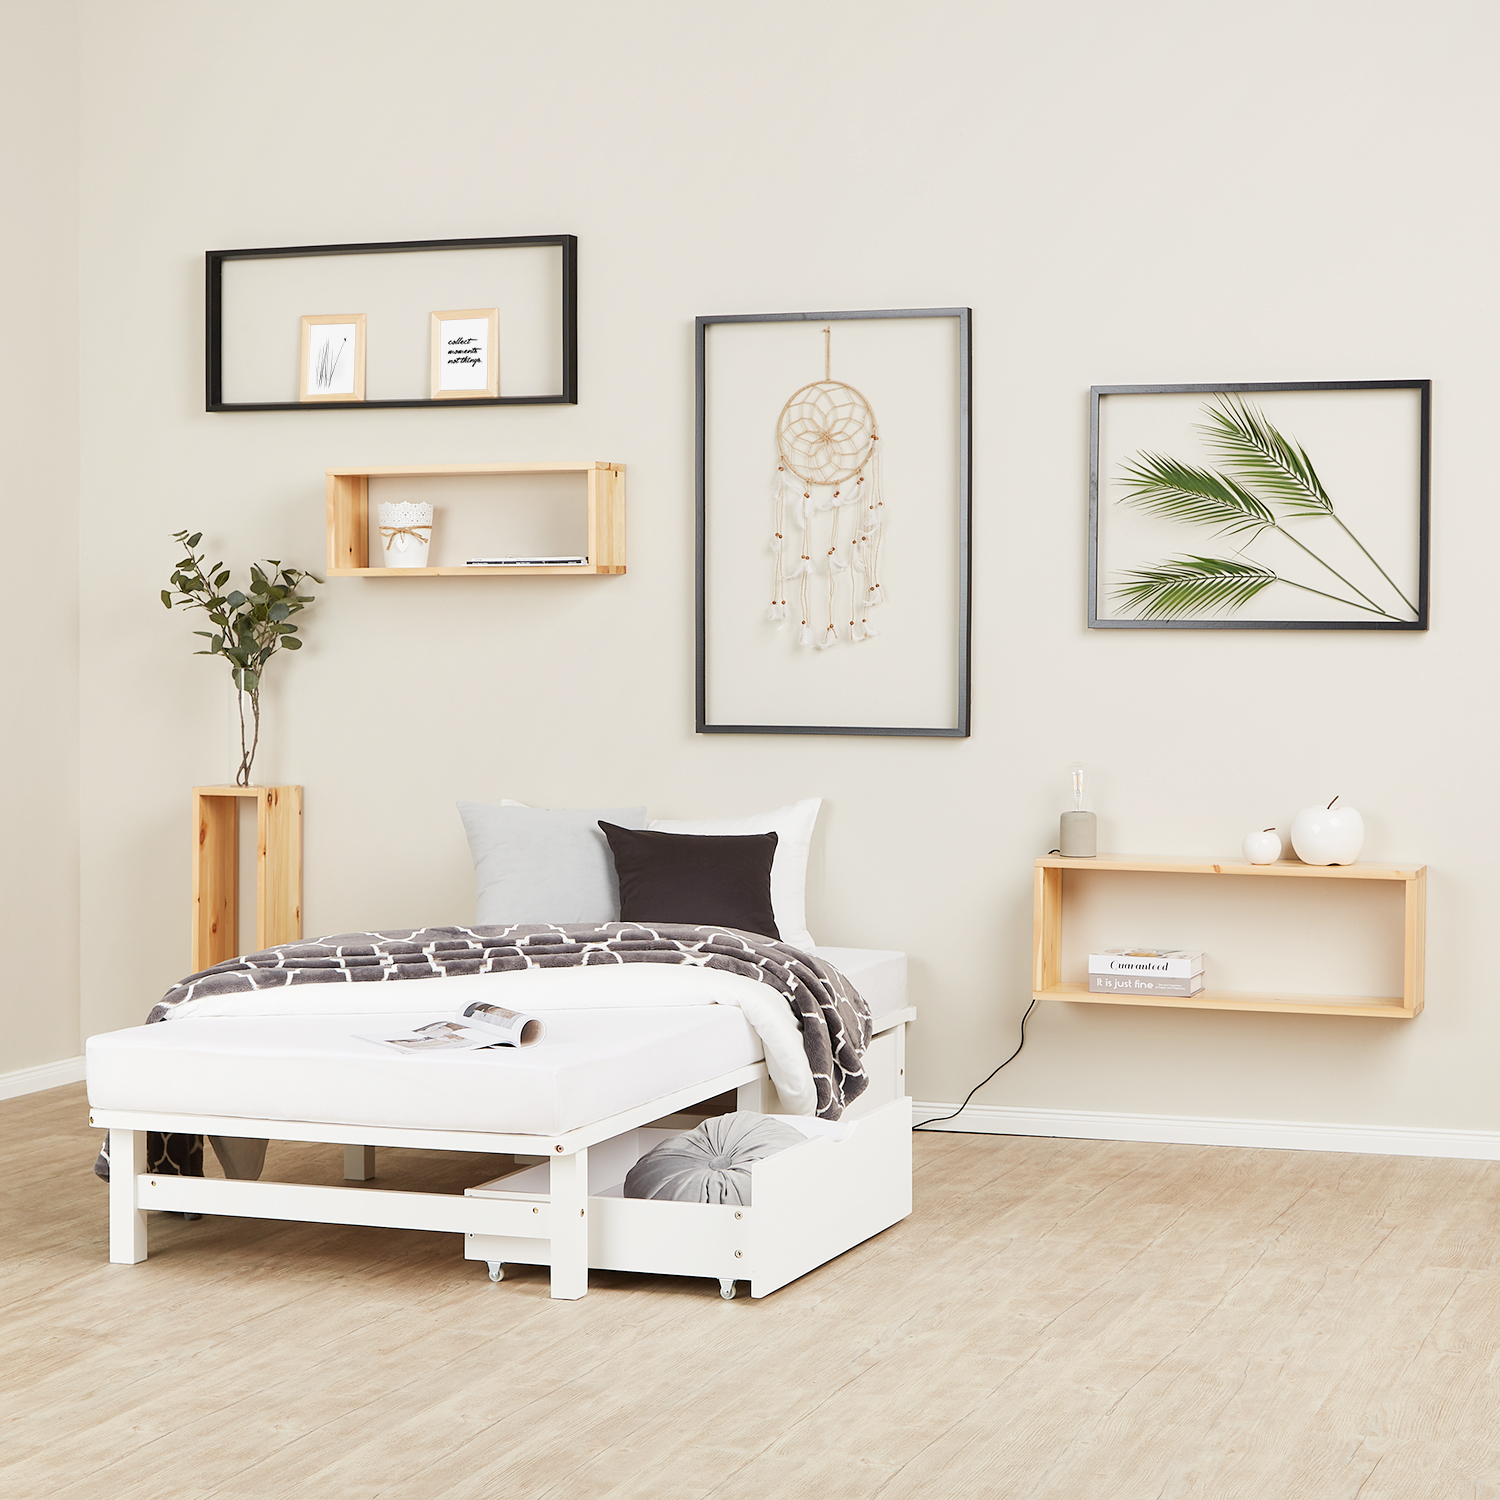 Palettenbett 90x200 cm mit Lattenrost und 2 Bettkästen Schubläden Massivholzbett Palettenmöbel Bett Holzbett 